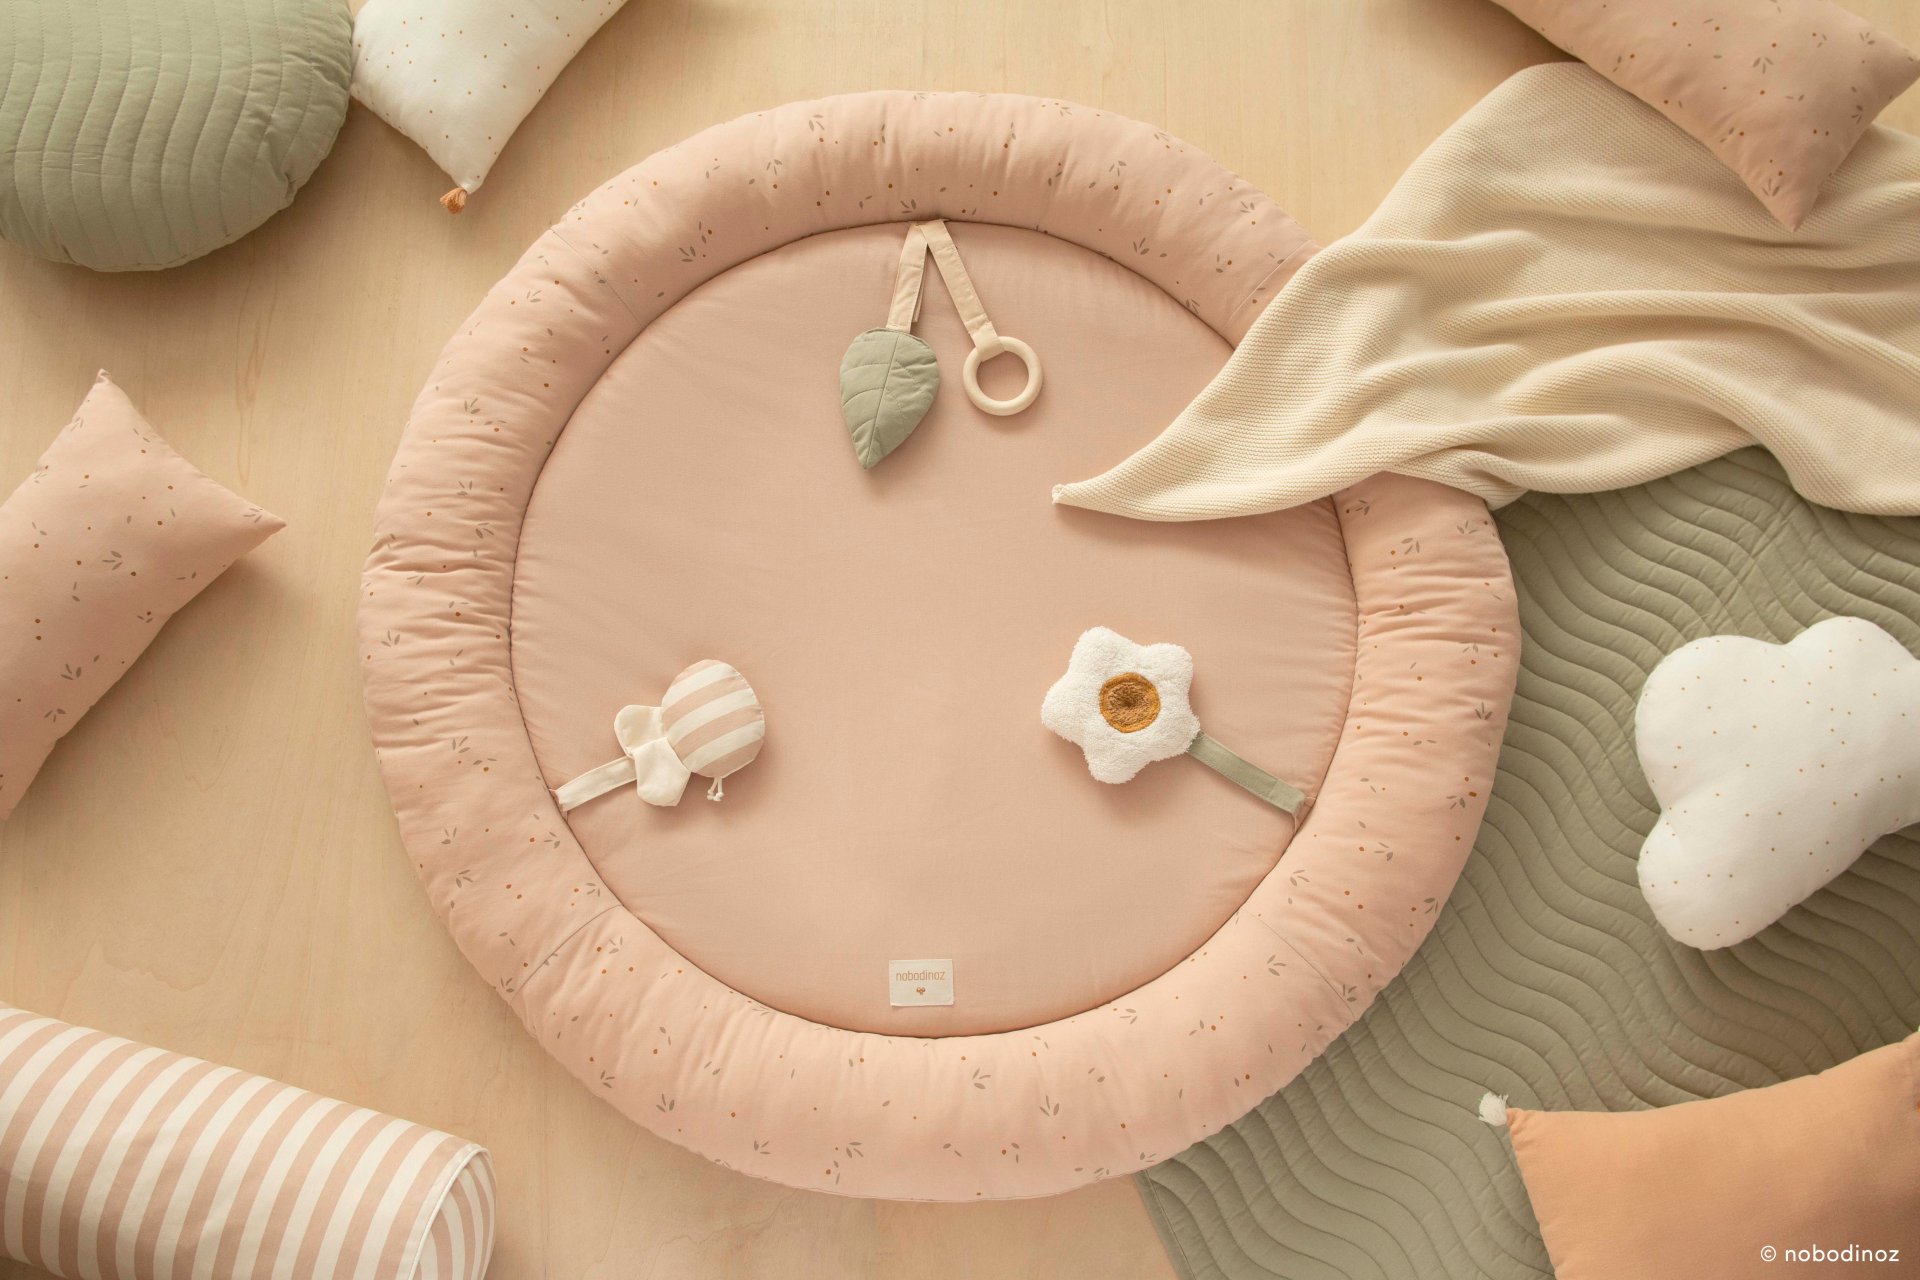 Tapis d'éveil sensoriel pour bébé, tapis activite montessori